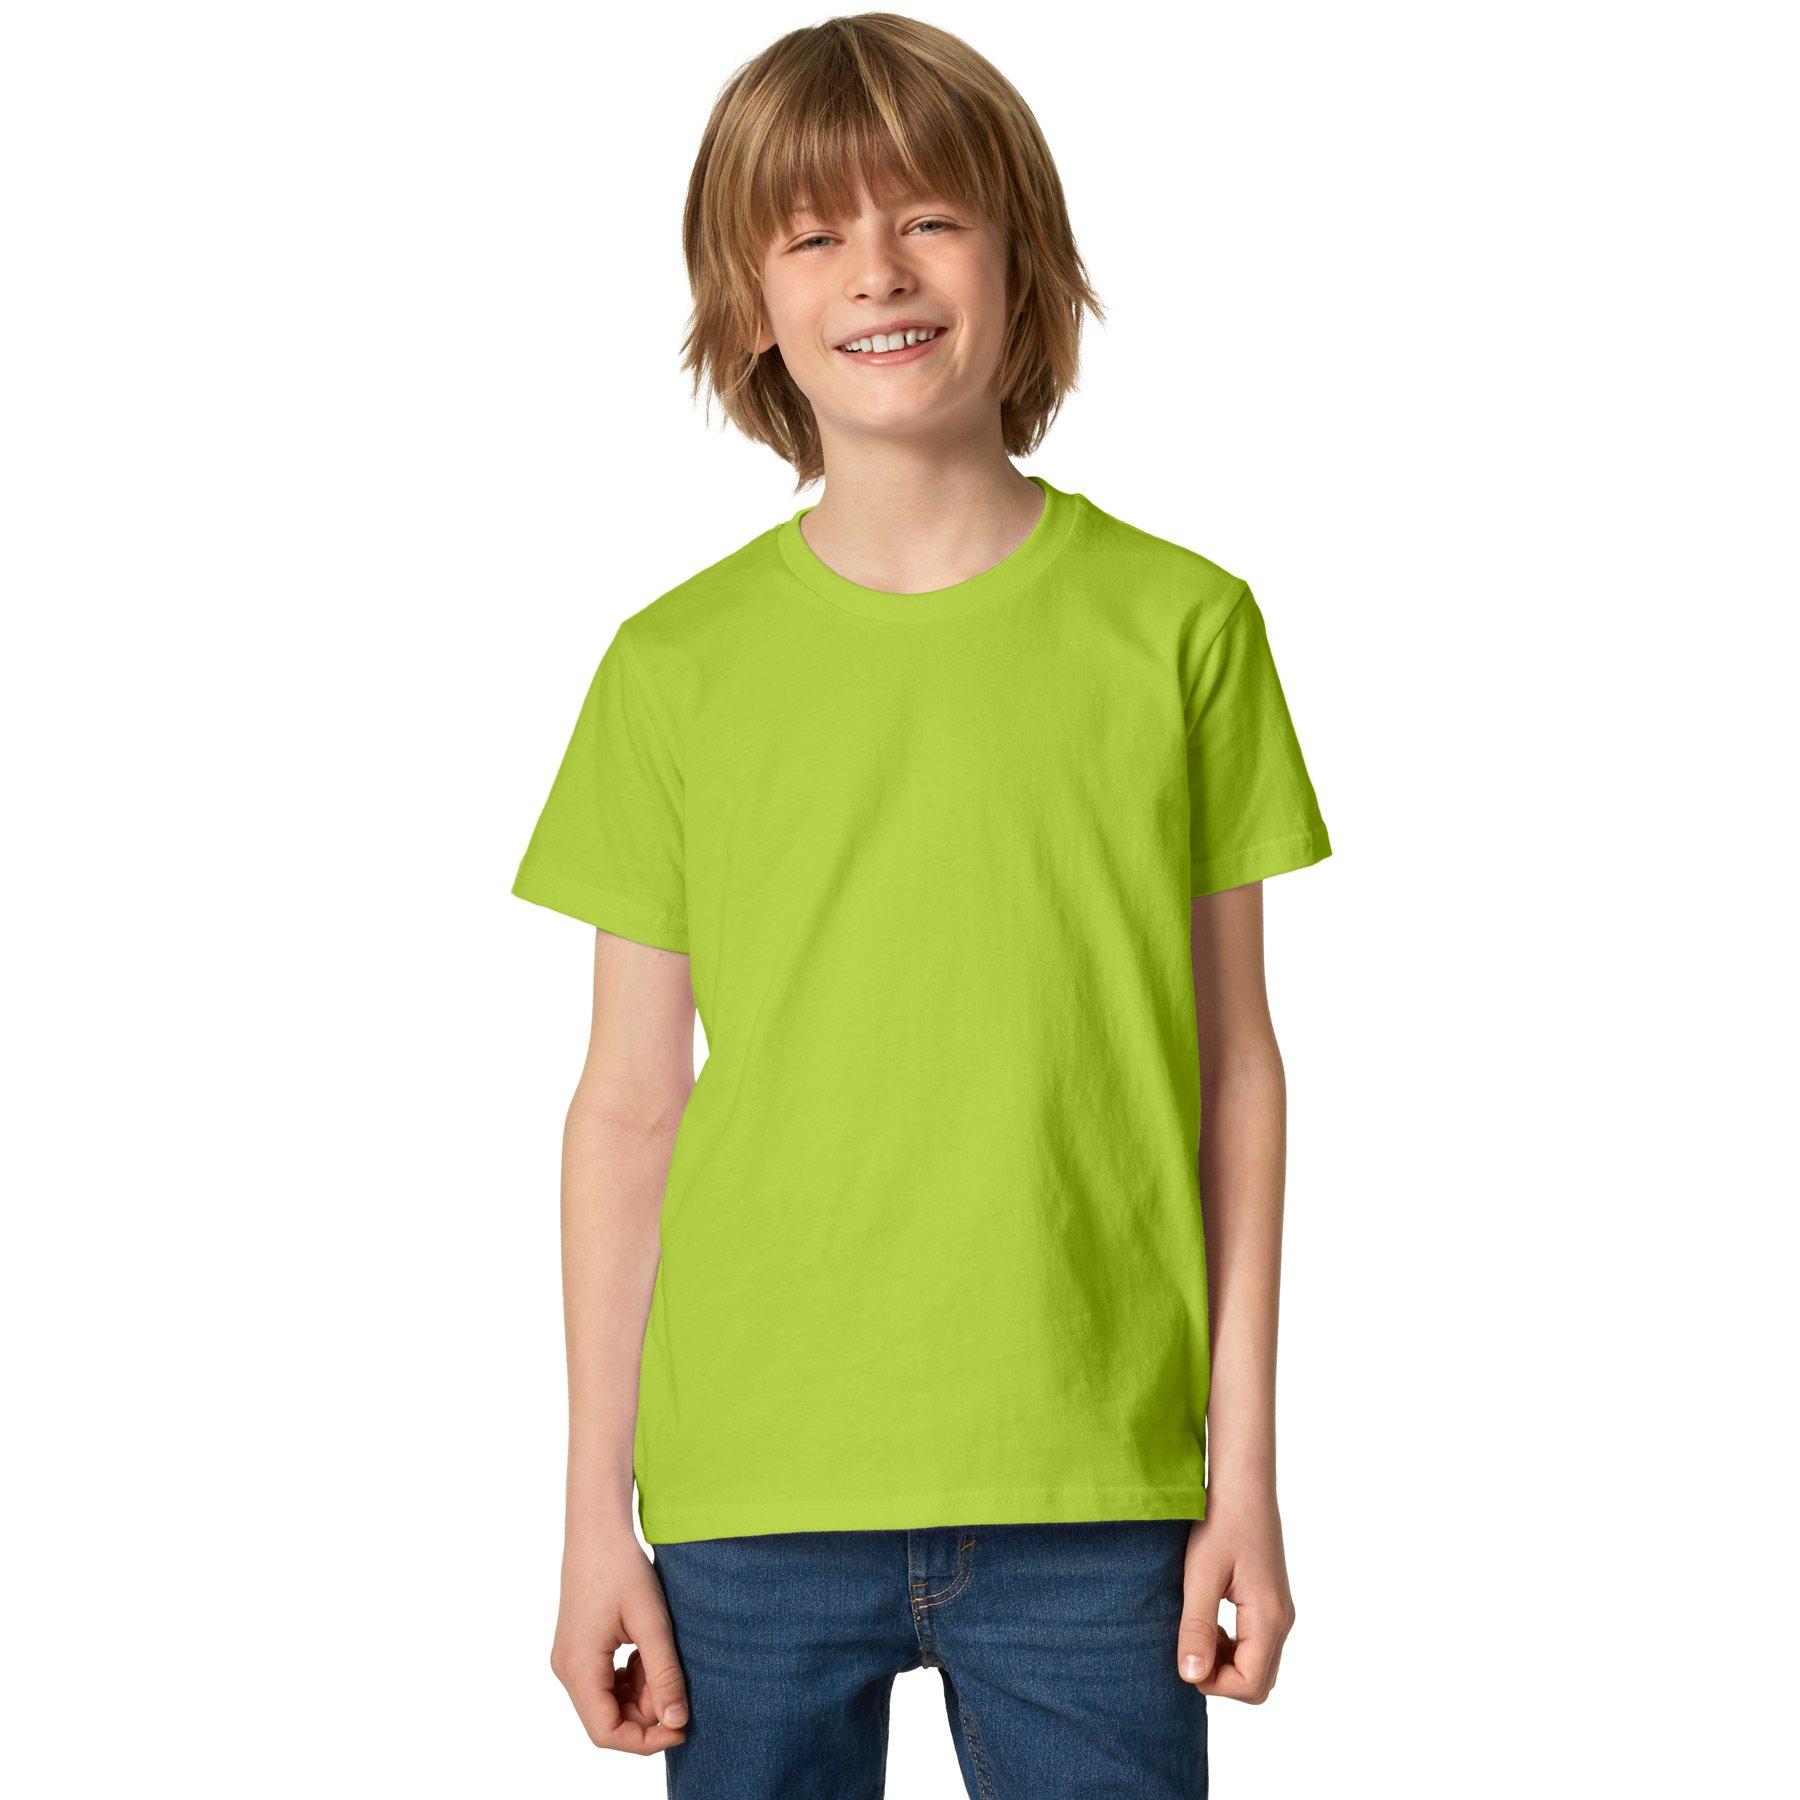 T-shirt Kinder Jungen Hellgrün 104 von Tectake